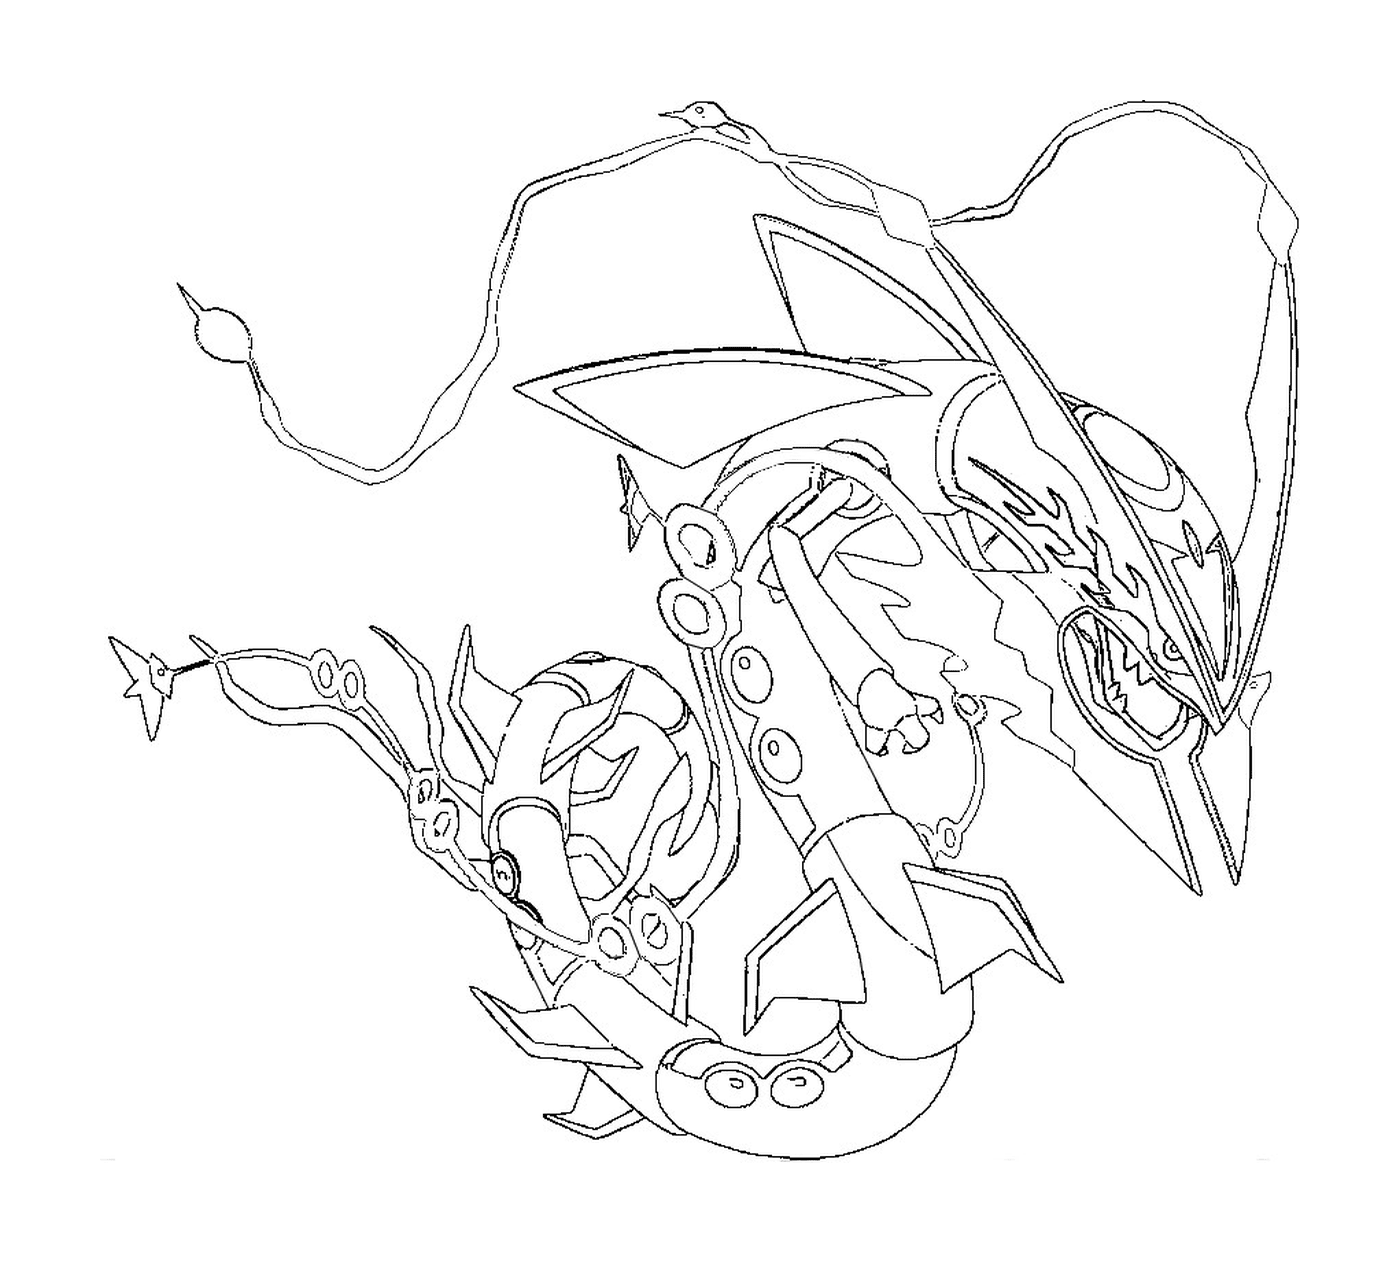  Мега Рейкваза - впечатляющий жучок 